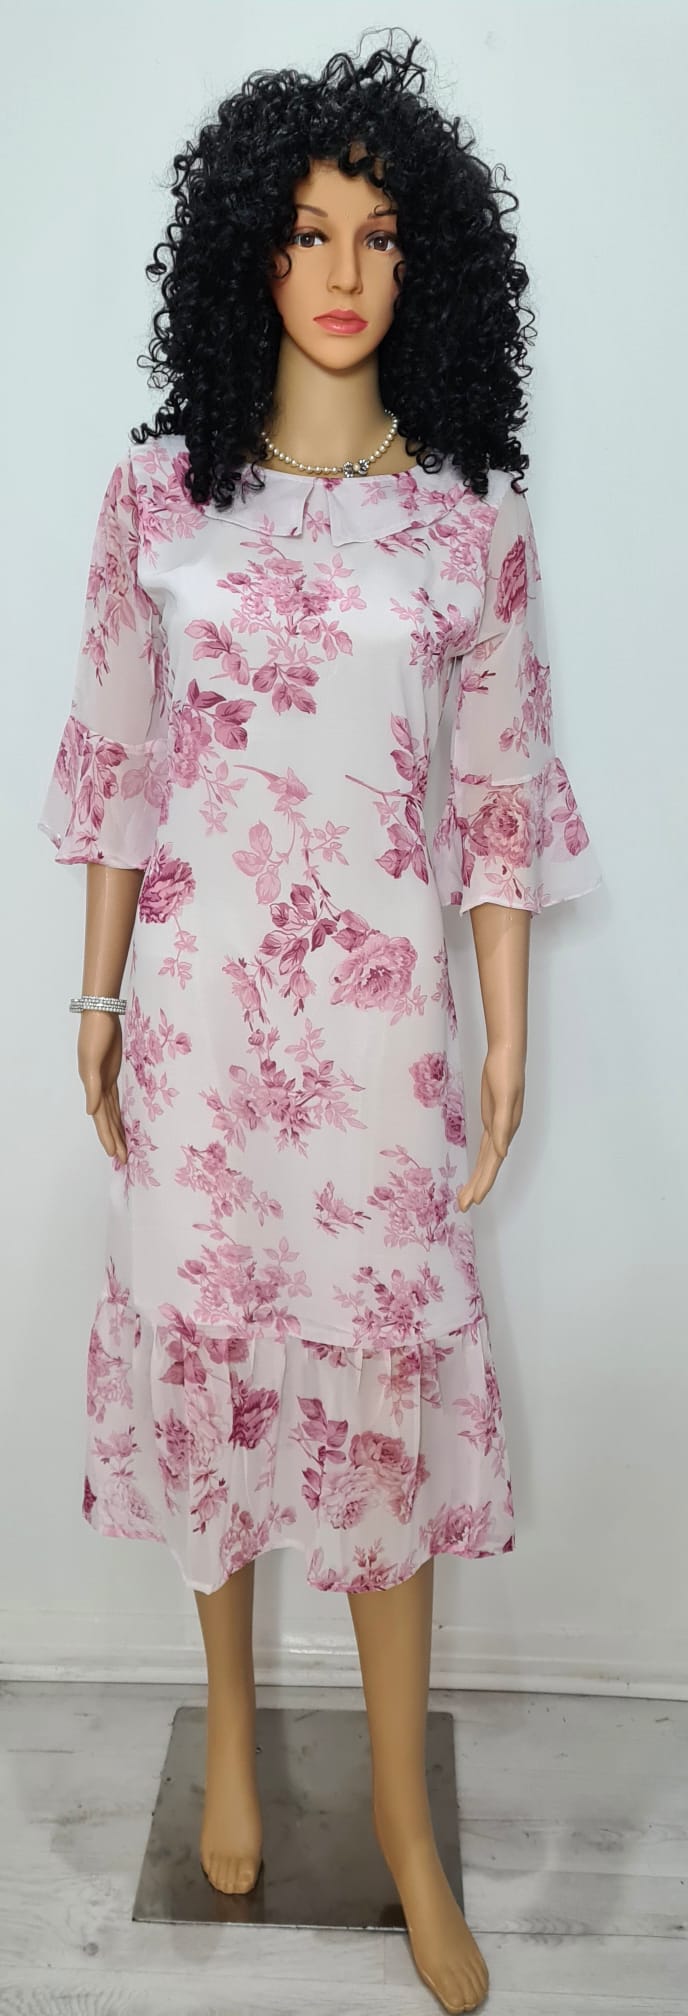 Floral printed chiffon Dress / western wear